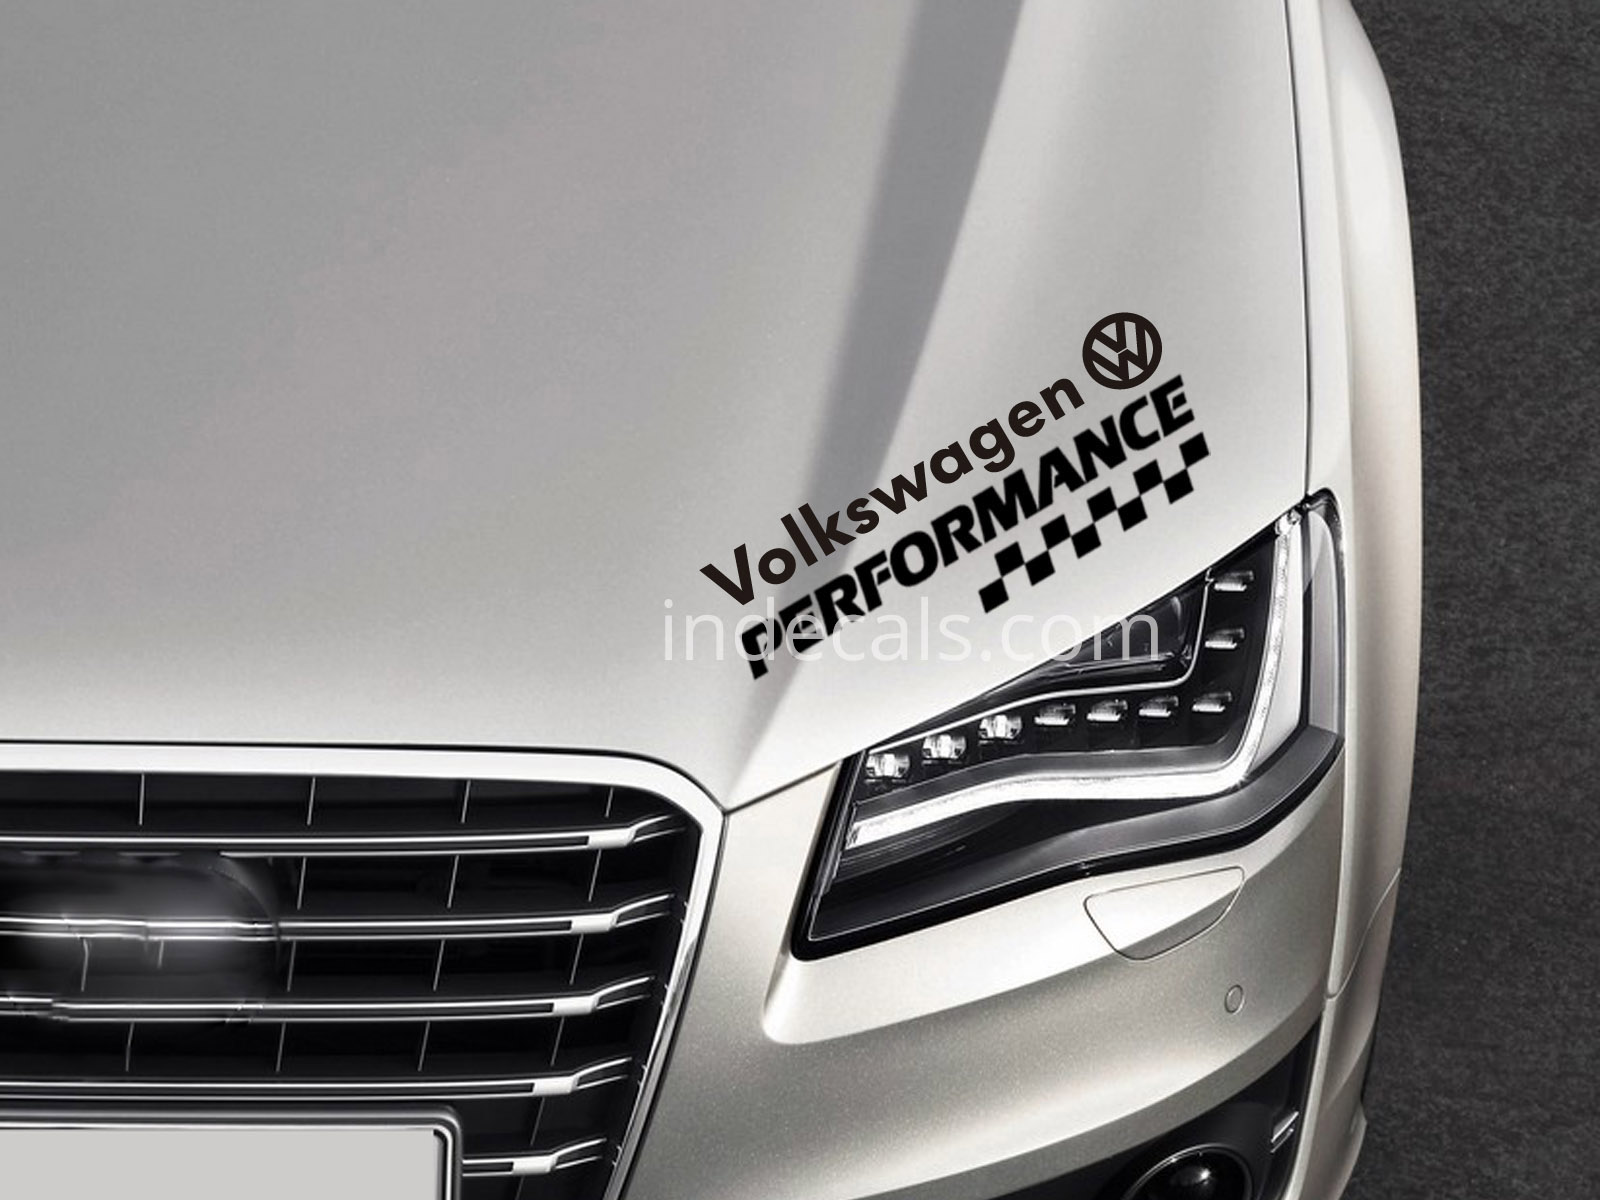 1 x Volkswagen Performance Sticker - Black